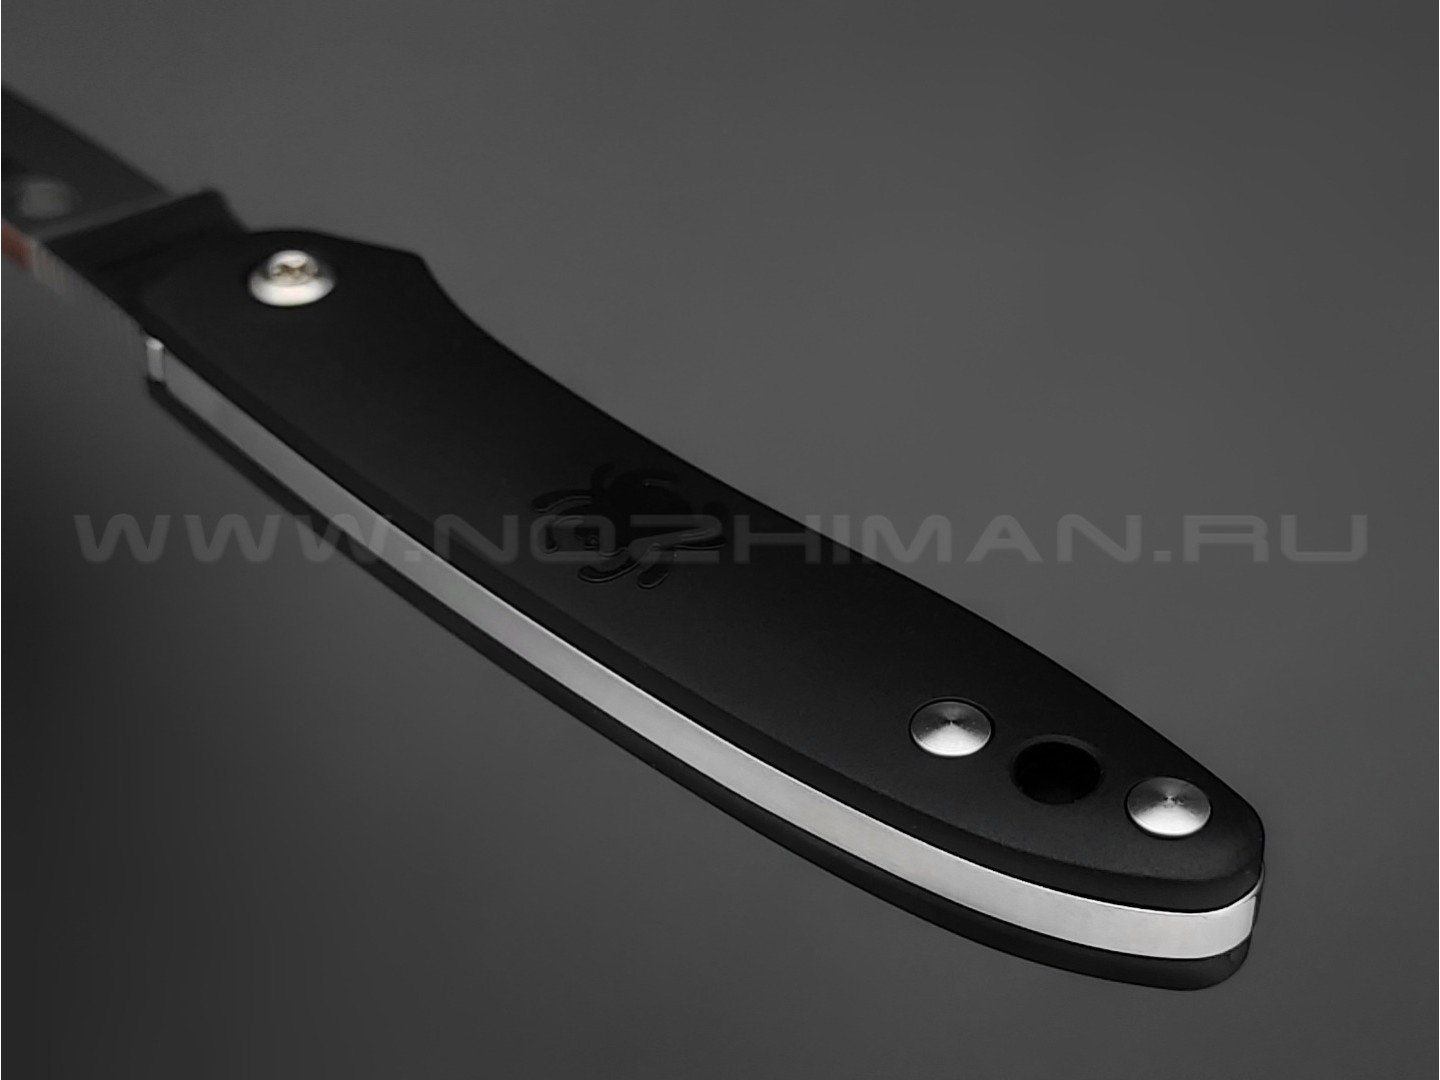 Нож Spyderco Roadie C189PBK сталь N690Co, рукоять FRN black